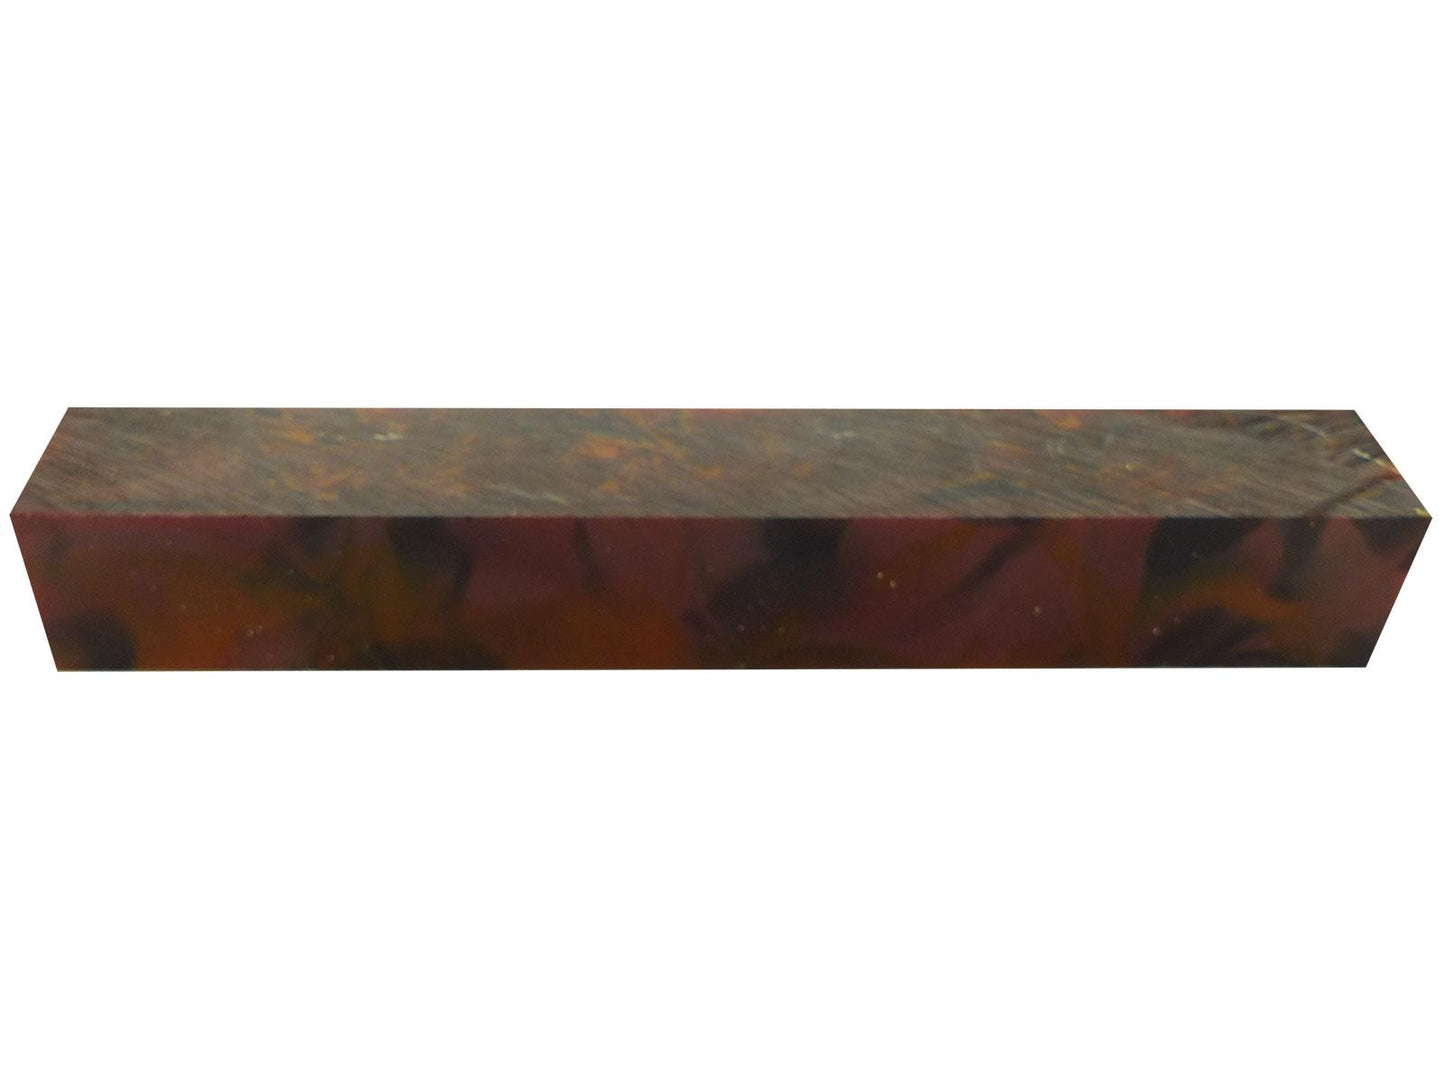 Turners' Mill Dark Red California Kirinite Acrylic Pen Blank - 150x20x20mm (5.9x0.79x0.79"), 6x3/4x3/4"